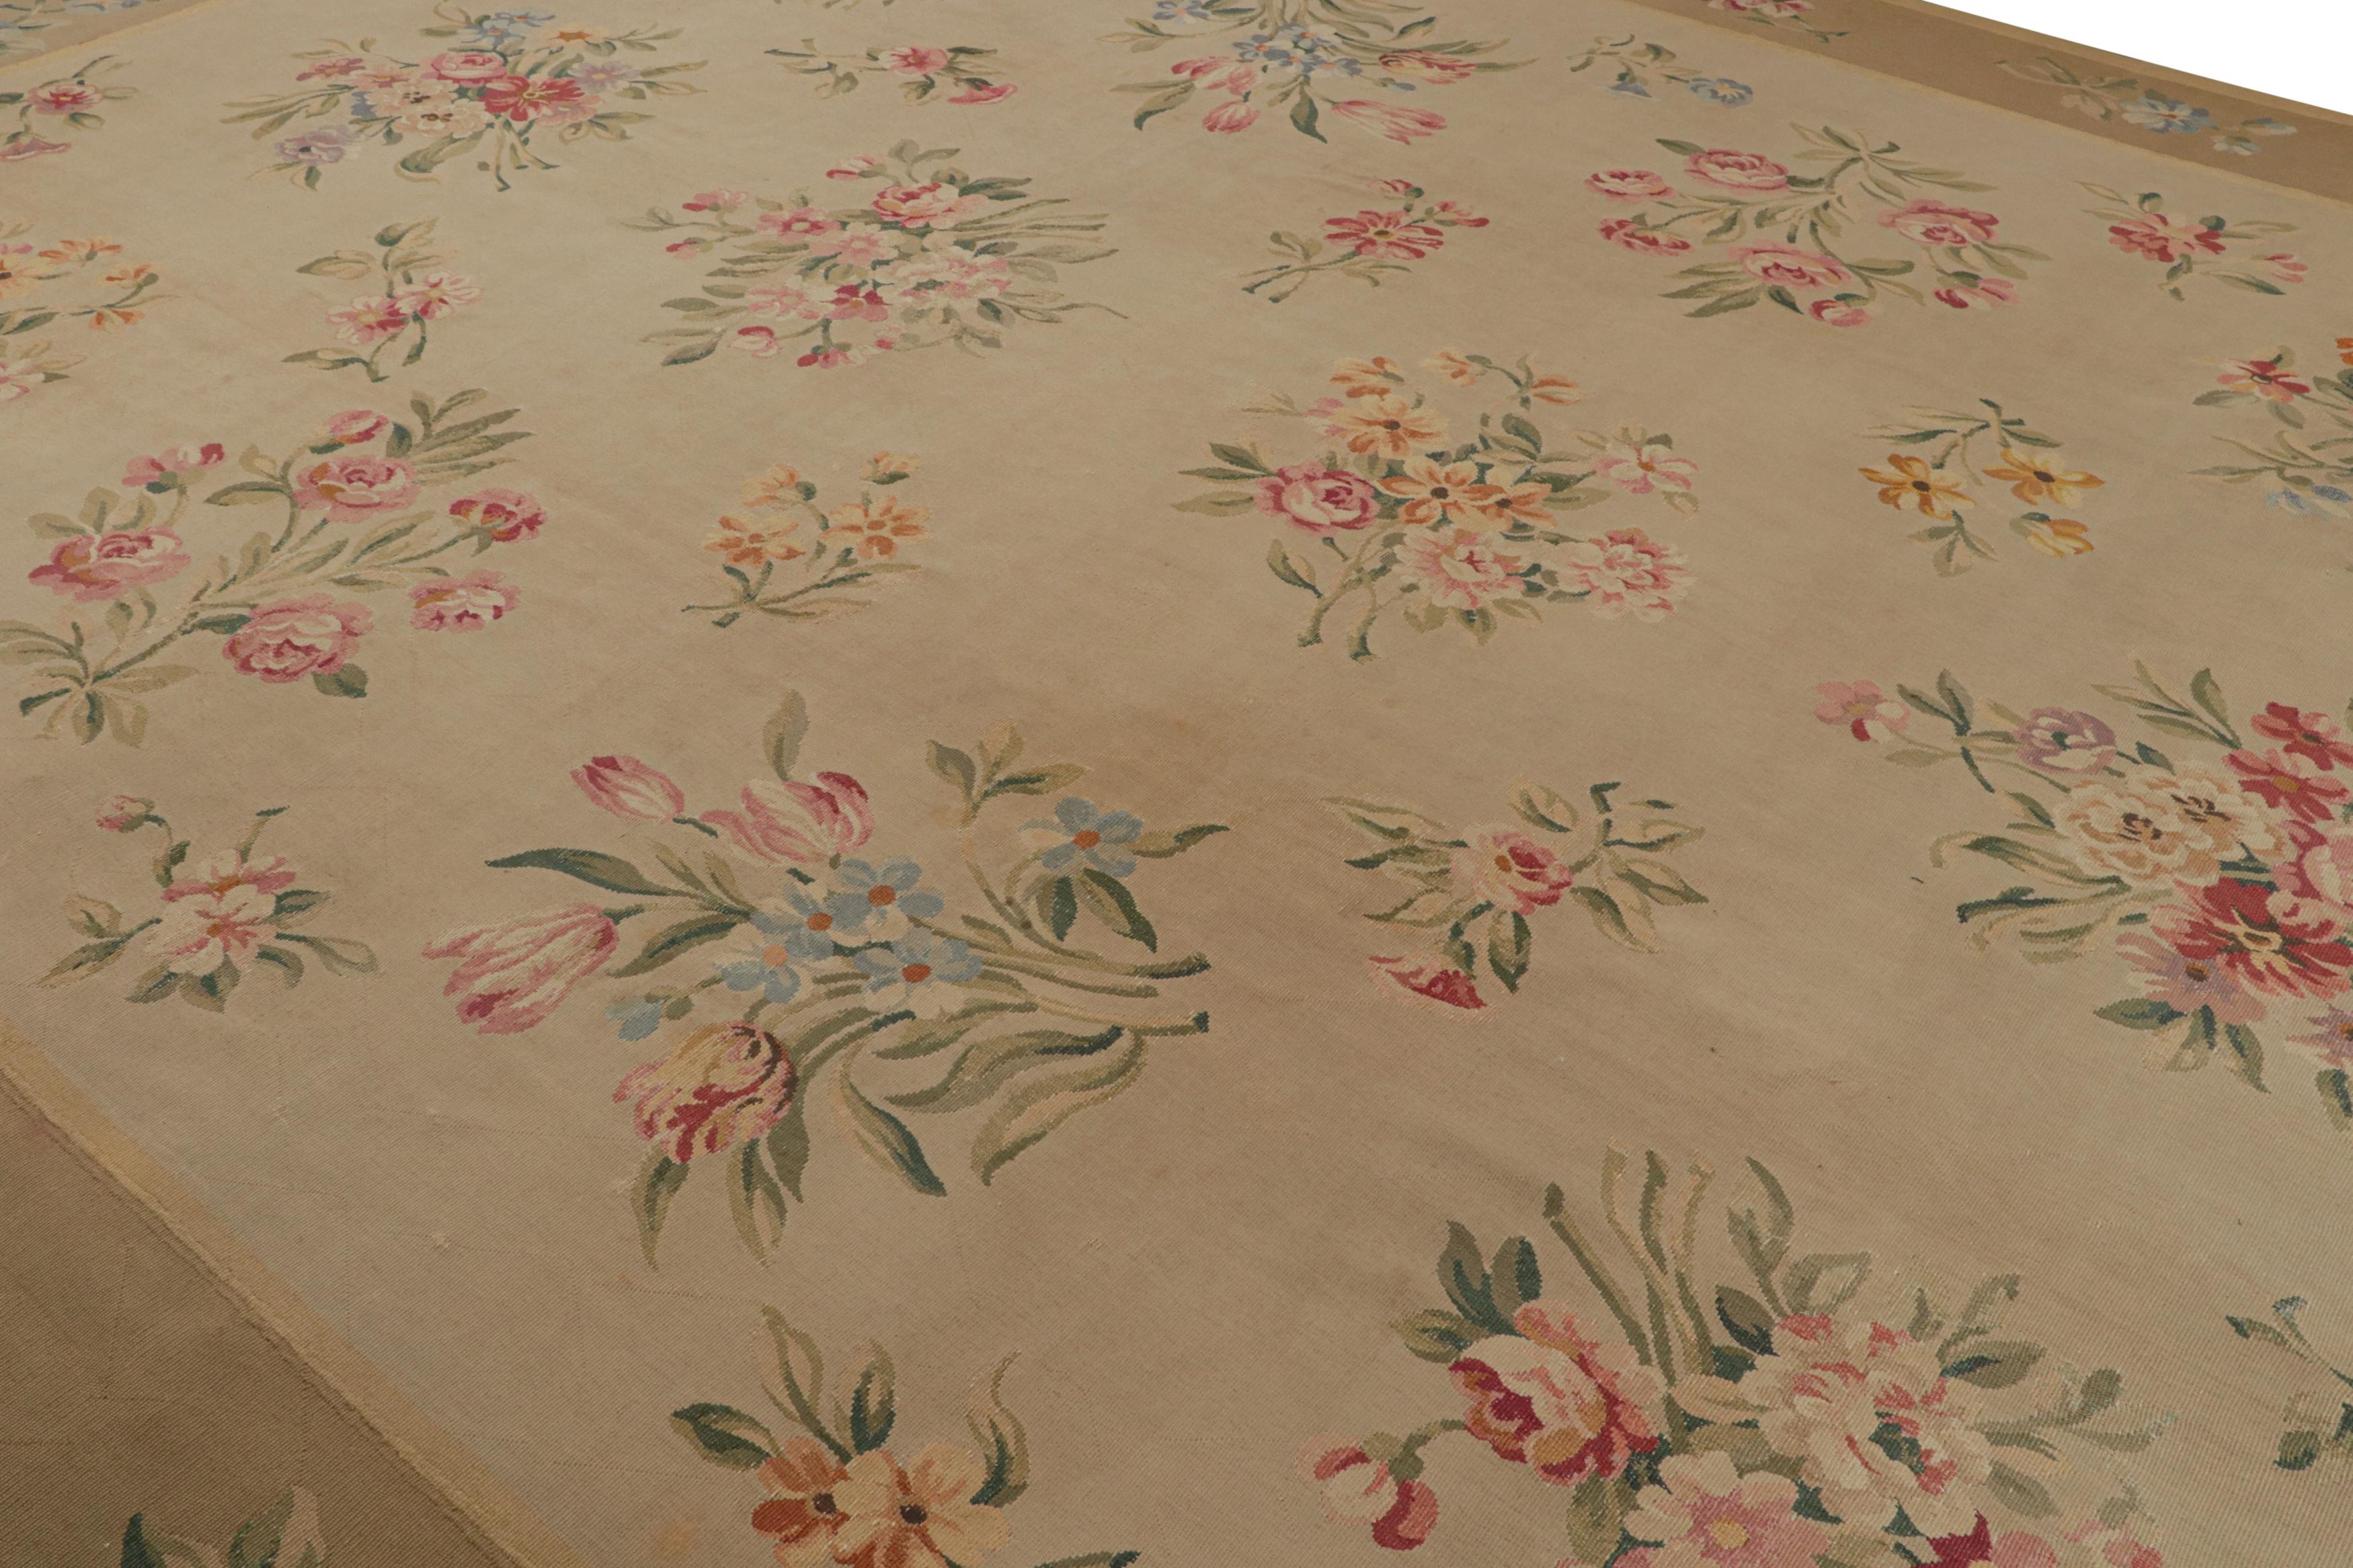 Dieser antike Aubusson-Teppich im Format 13x17 ist ein handgewebter Flachgewebe-Teppich aus Wolle und eine Neuvorstellung der europäischen Teppichkollektion von Rug & Kilim, deren Ursprung auf die Zeit um 1890-1900 zurückgeht.

Über das Design: